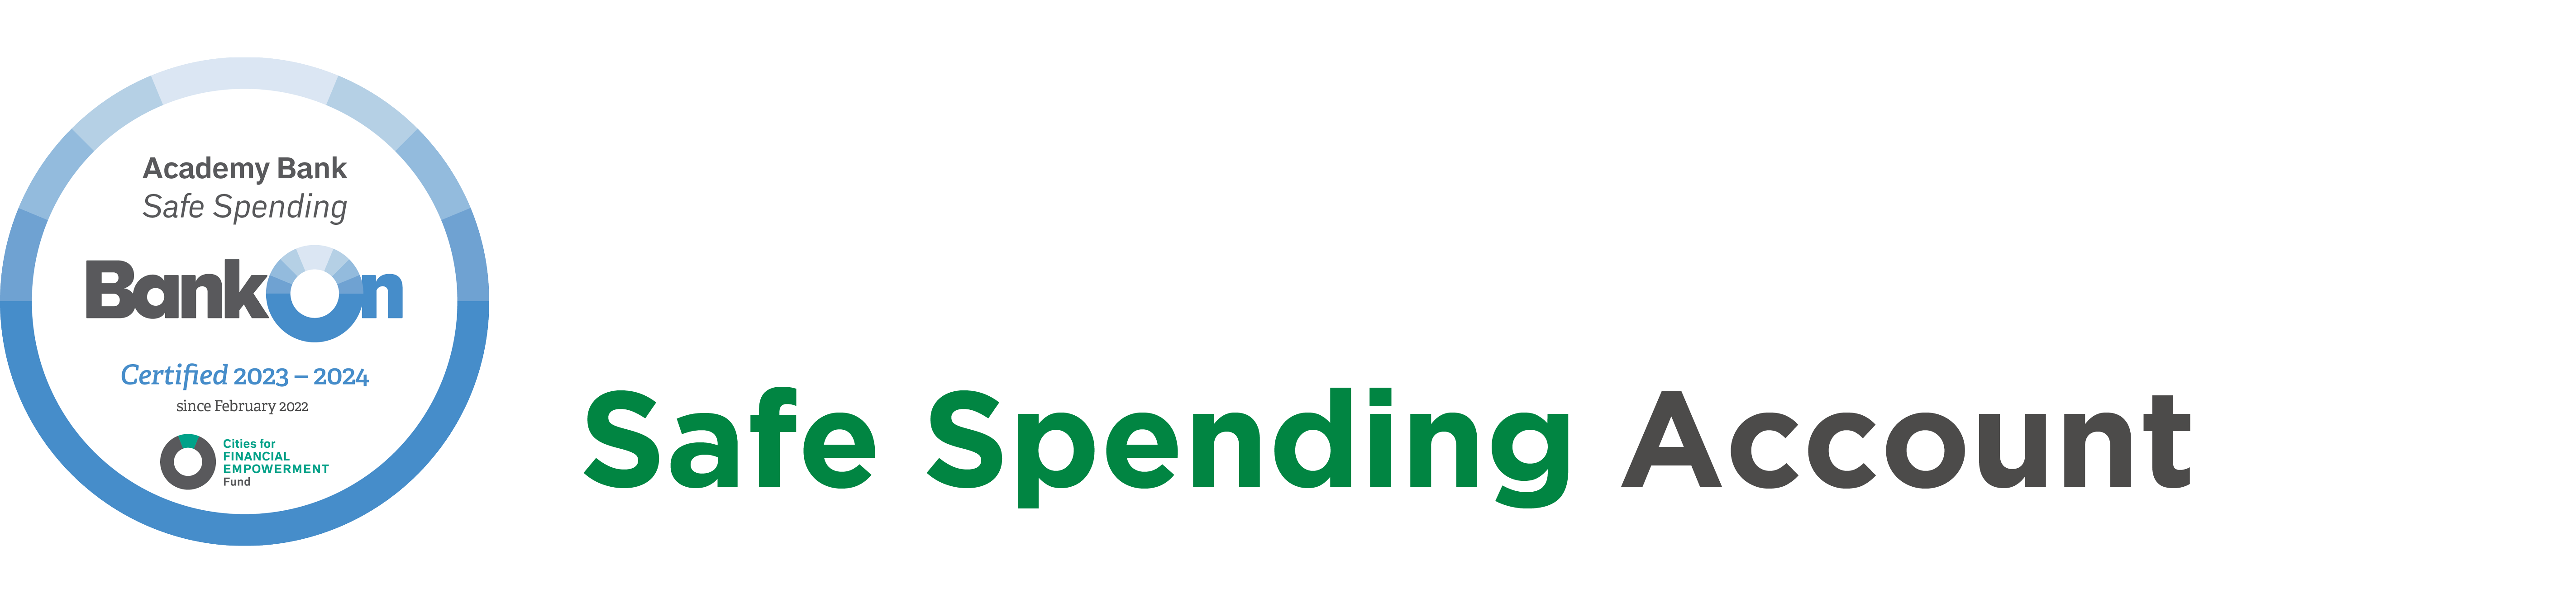 safe spending logo